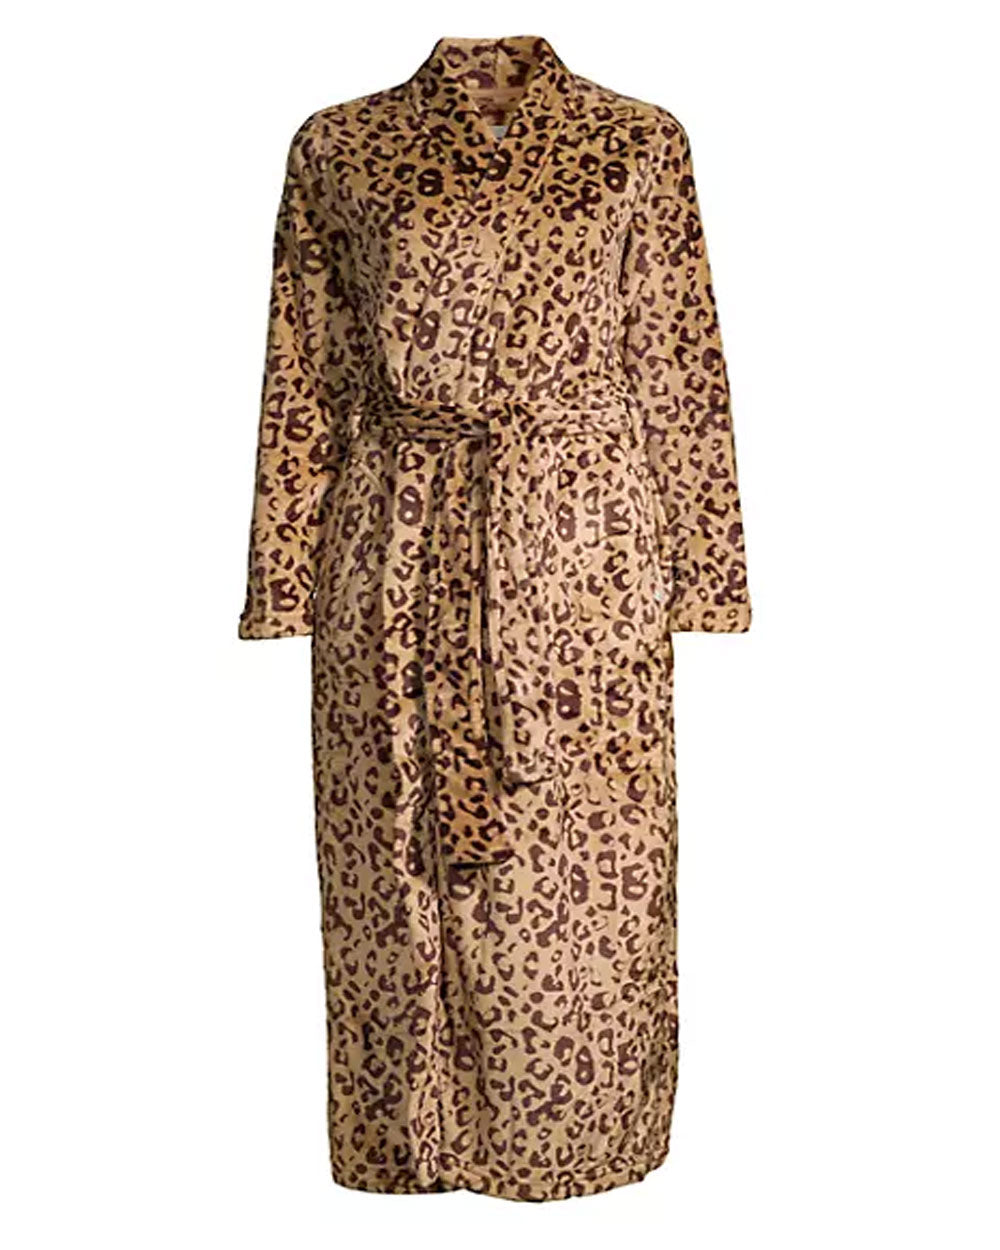 Marlow Robe in Live Oak Leopard